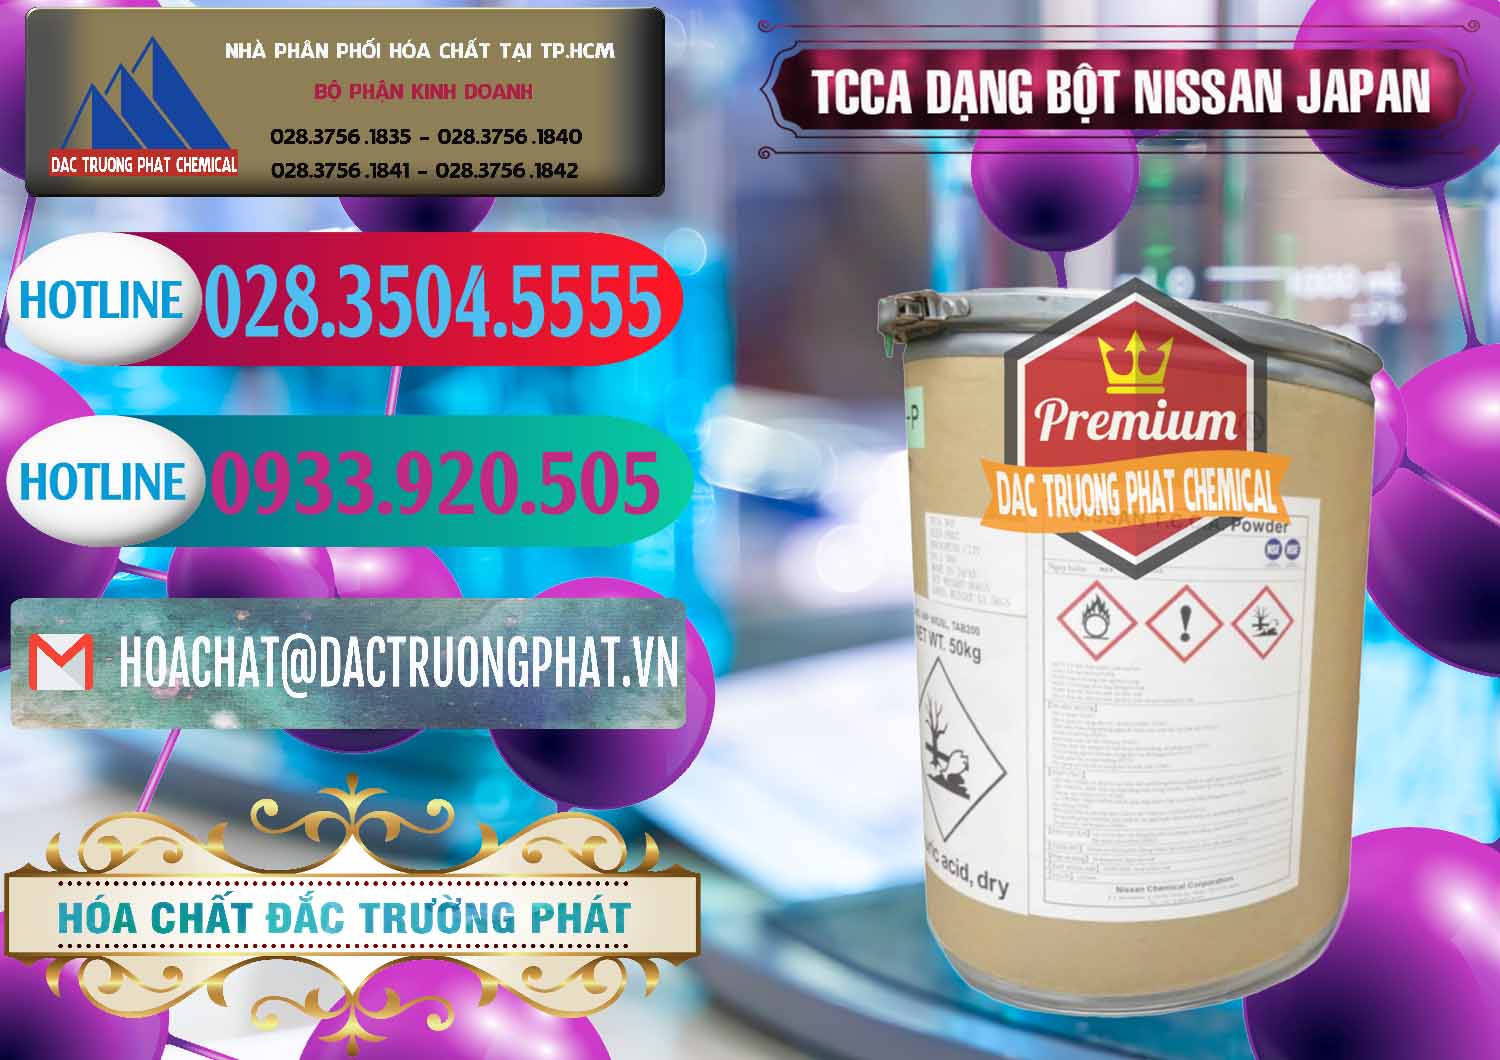 Nhà nhập khẩu - bán TCCA - Acid Trichloroisocyanuric 90% Dạng Bột Nissan Nhật Bản Japan - 0375 - Nơi chuyên bán & phân phối hóa chất tại TP.HCM - truongphat.vn